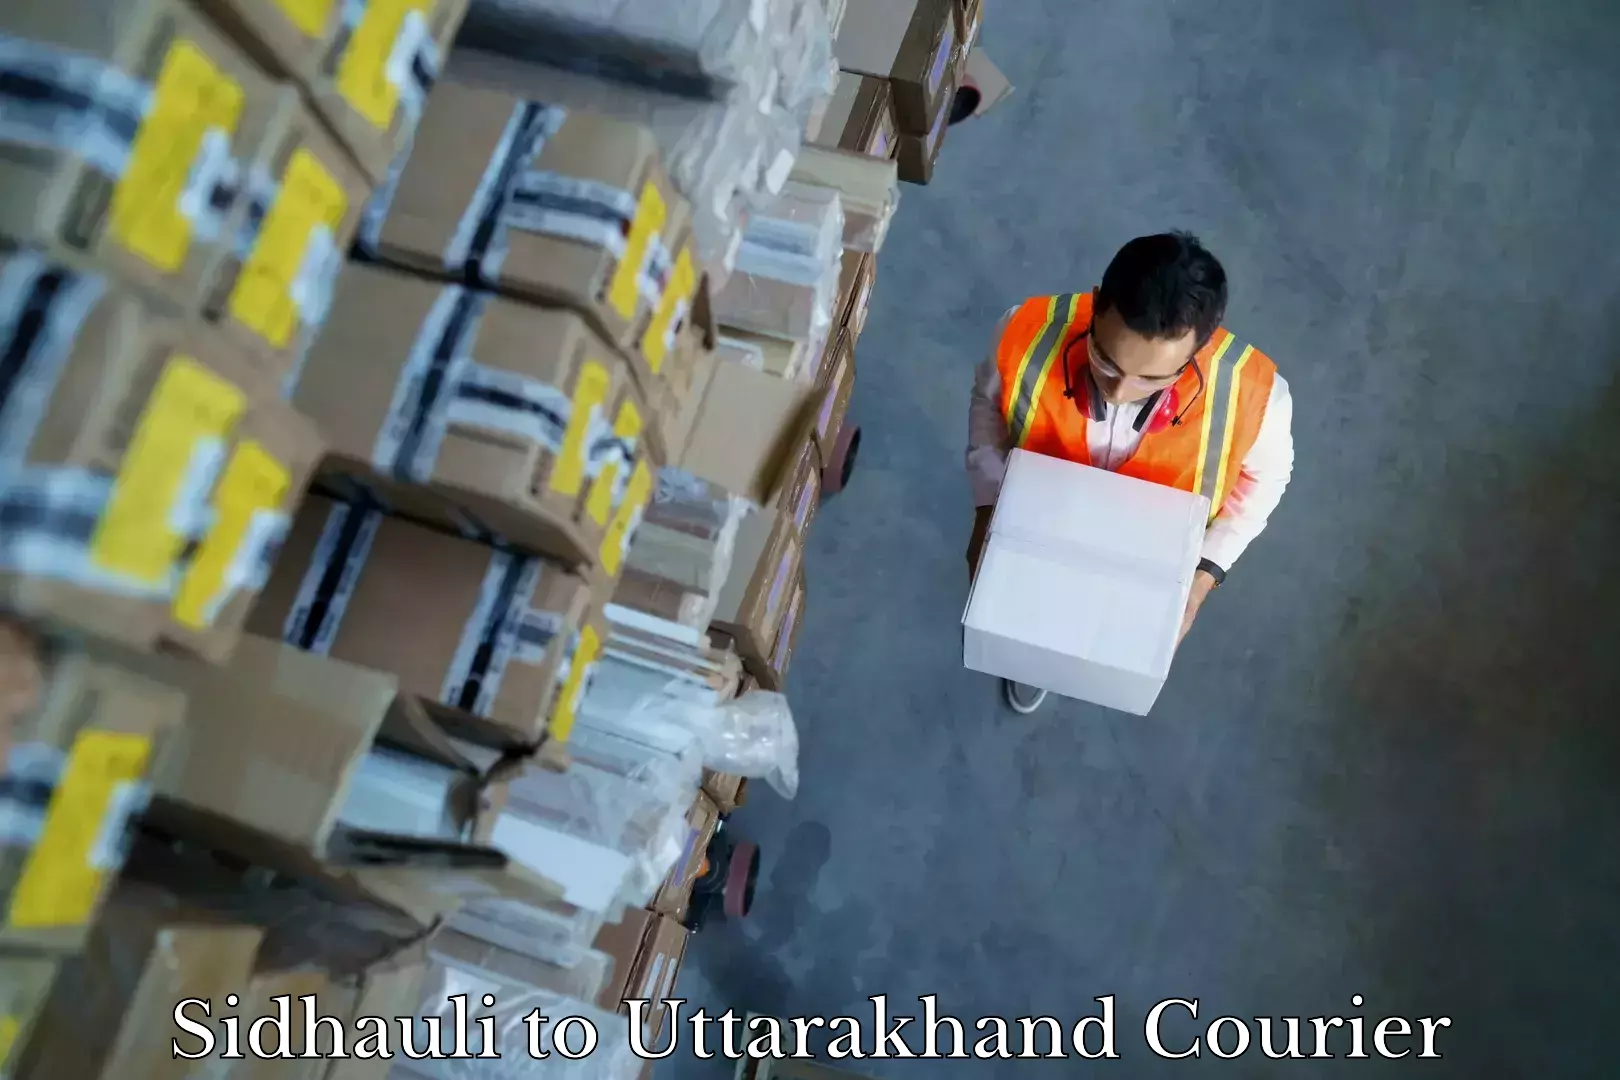 Furniture moving assistance Sidhauli to Uttarakhand